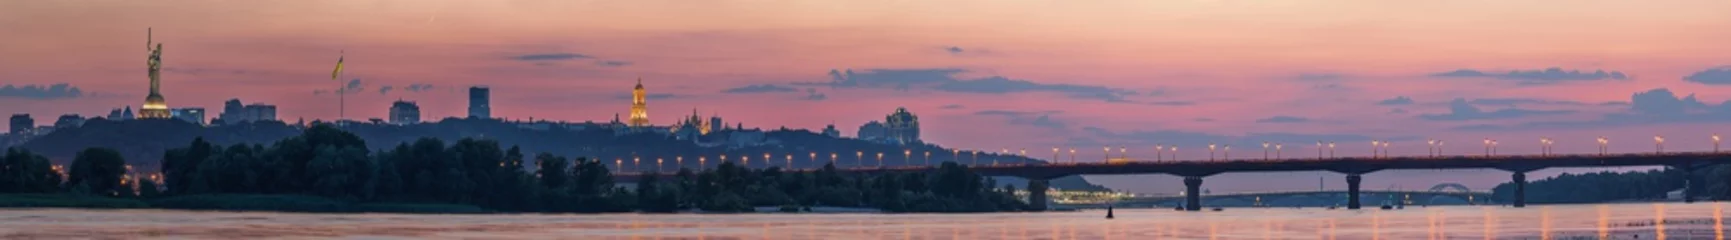 Keuken spatwand met foto Uitzicht op Kiev Pechersk Lavra, Motherland Monument, Kiev bruggen en de rivier de Dnjepr, na zonsondergang wordt een dunne halve maan aan de oranje hemel gezien. © underwaterstas